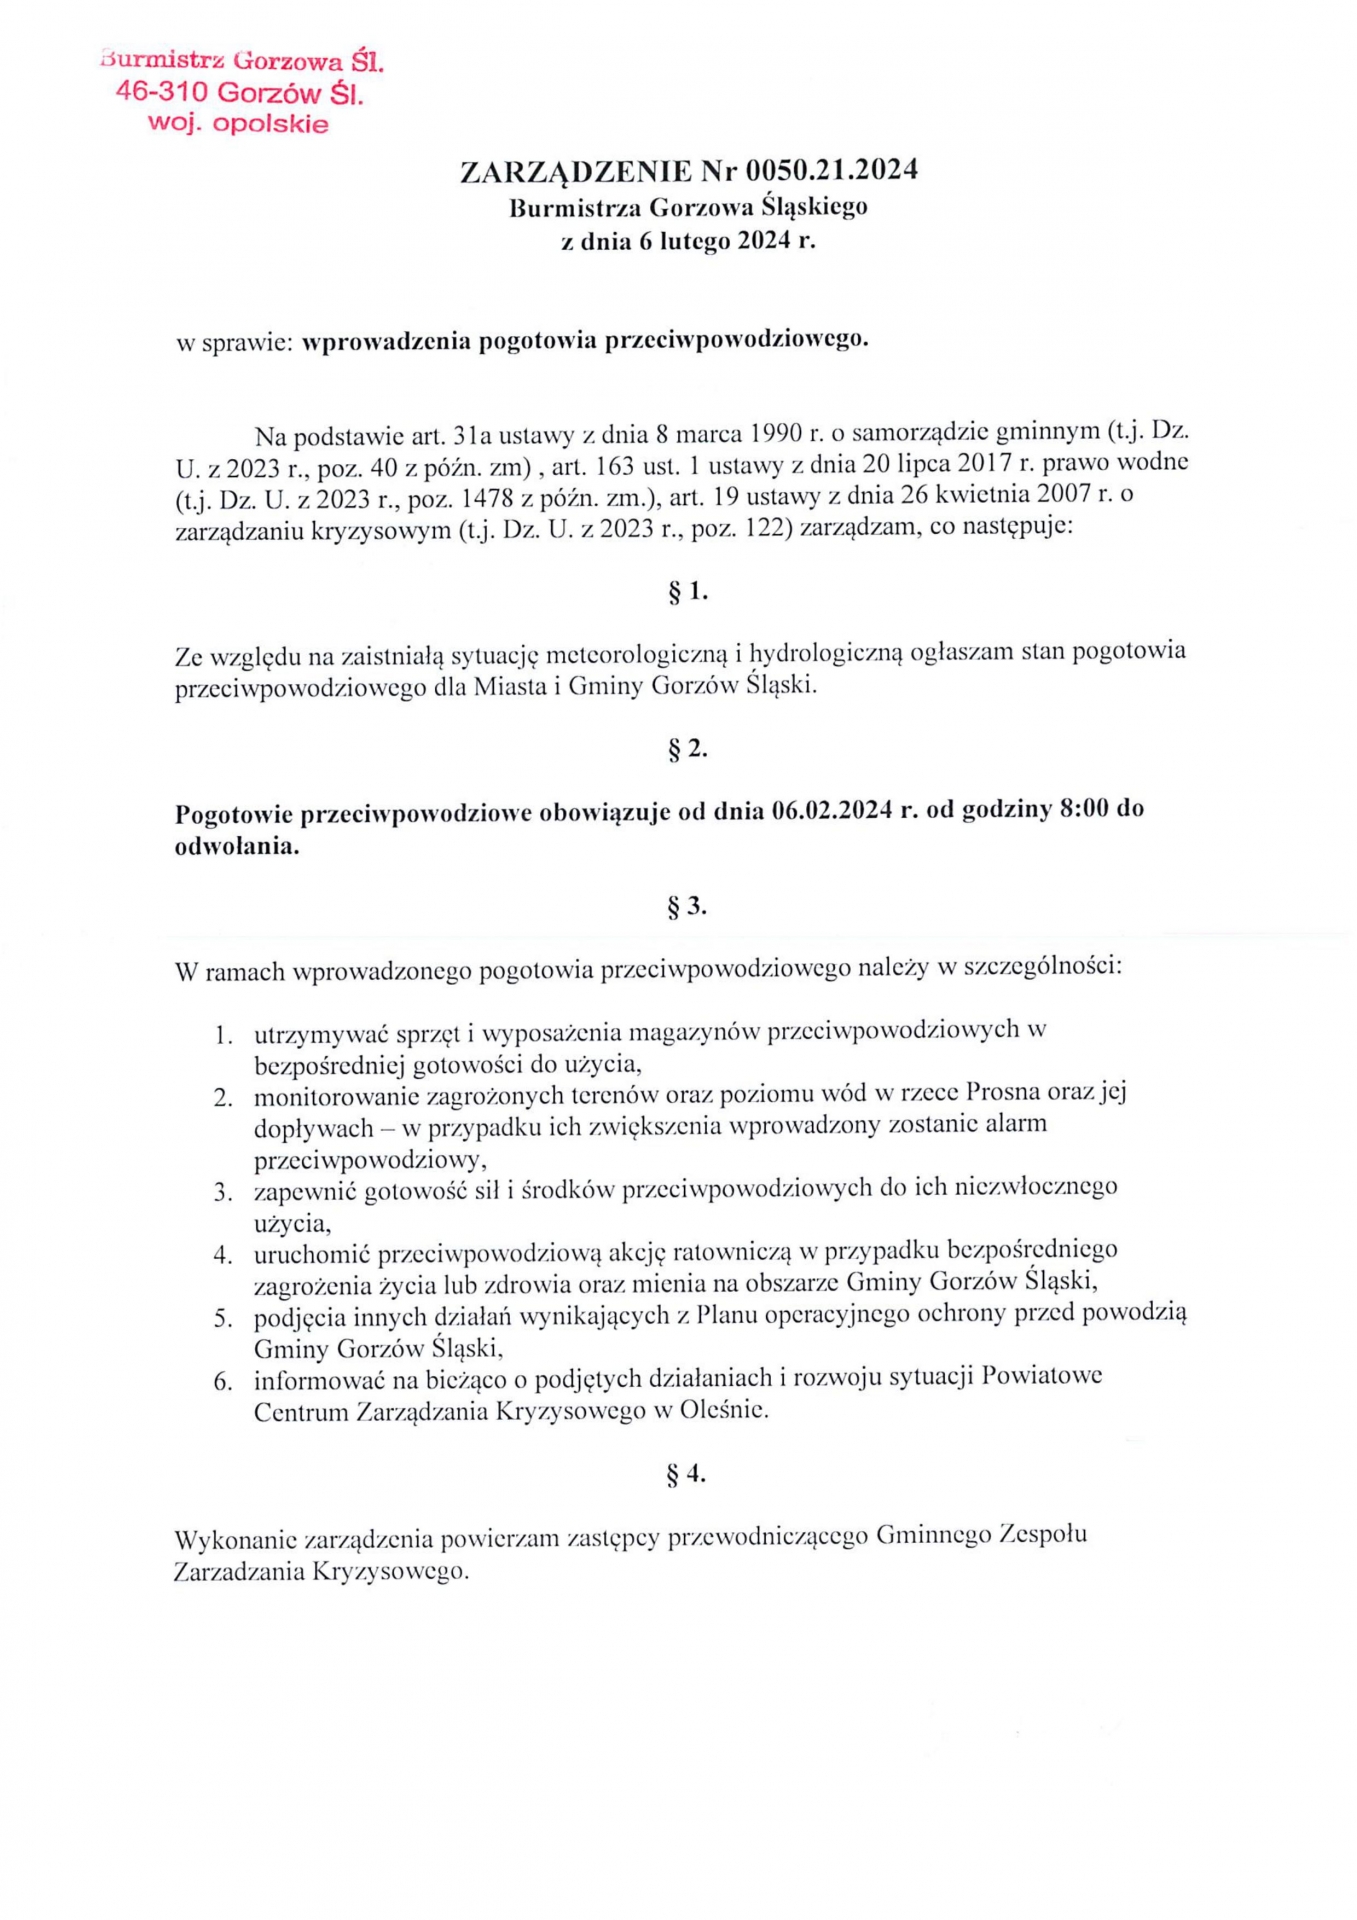 Zdjęcie do artykułu: Zarządzenie Burmistrza Gorzowa Śląskiego w sprawie wprowadzenia pogotowia przeciwpowodziowego. 